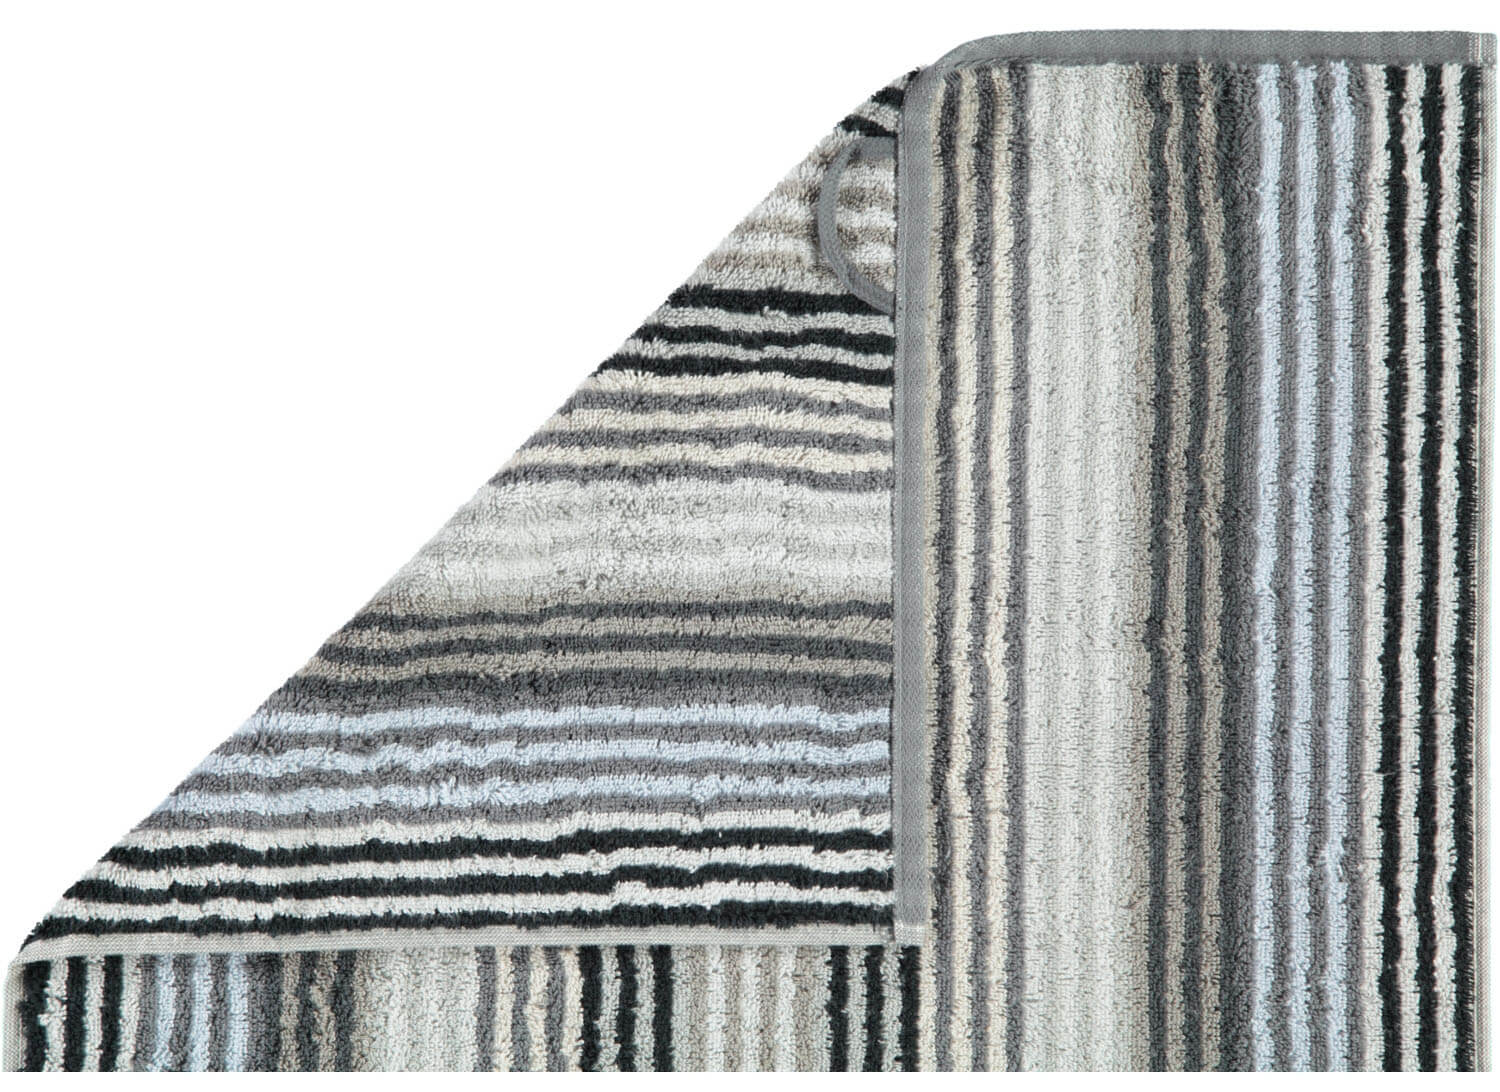 Махровое полотенце Unique Stripes Anthrazit ☞ Размер: 50 x 100 см